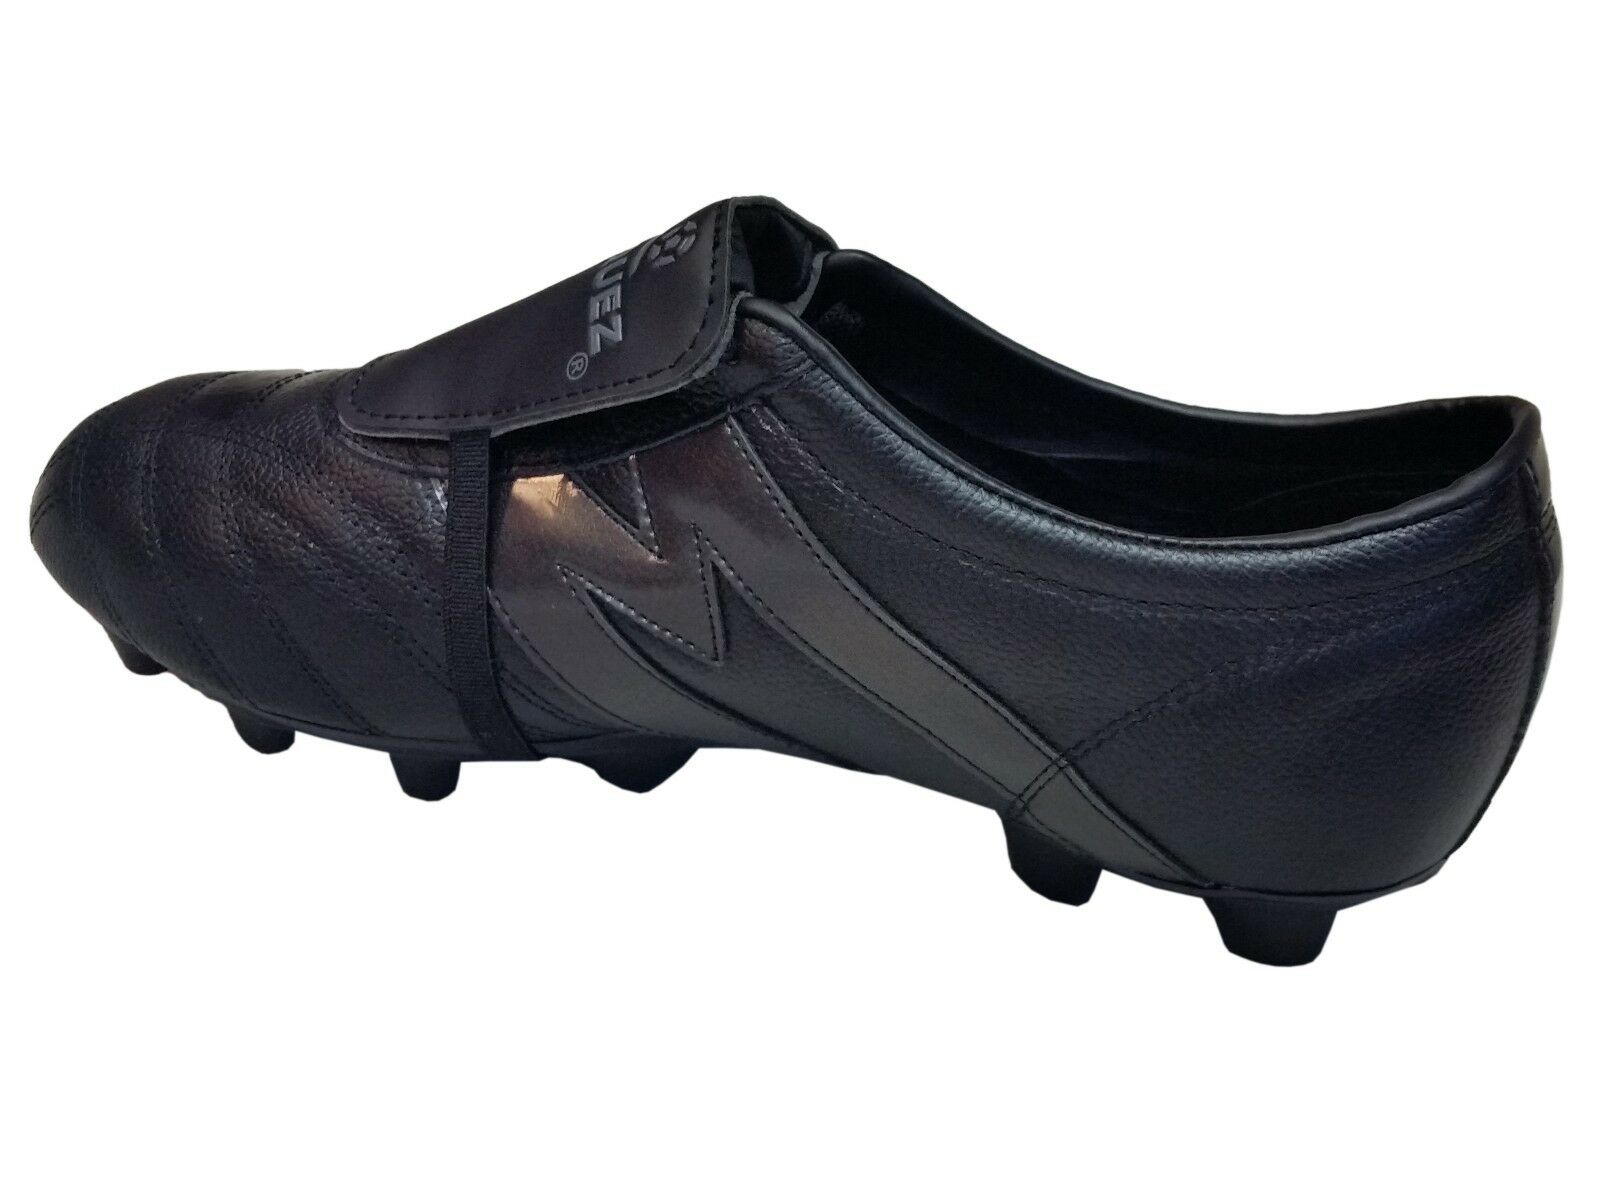 Manriquez Soccer Cleats  Authentic Leather Total Black MID SX